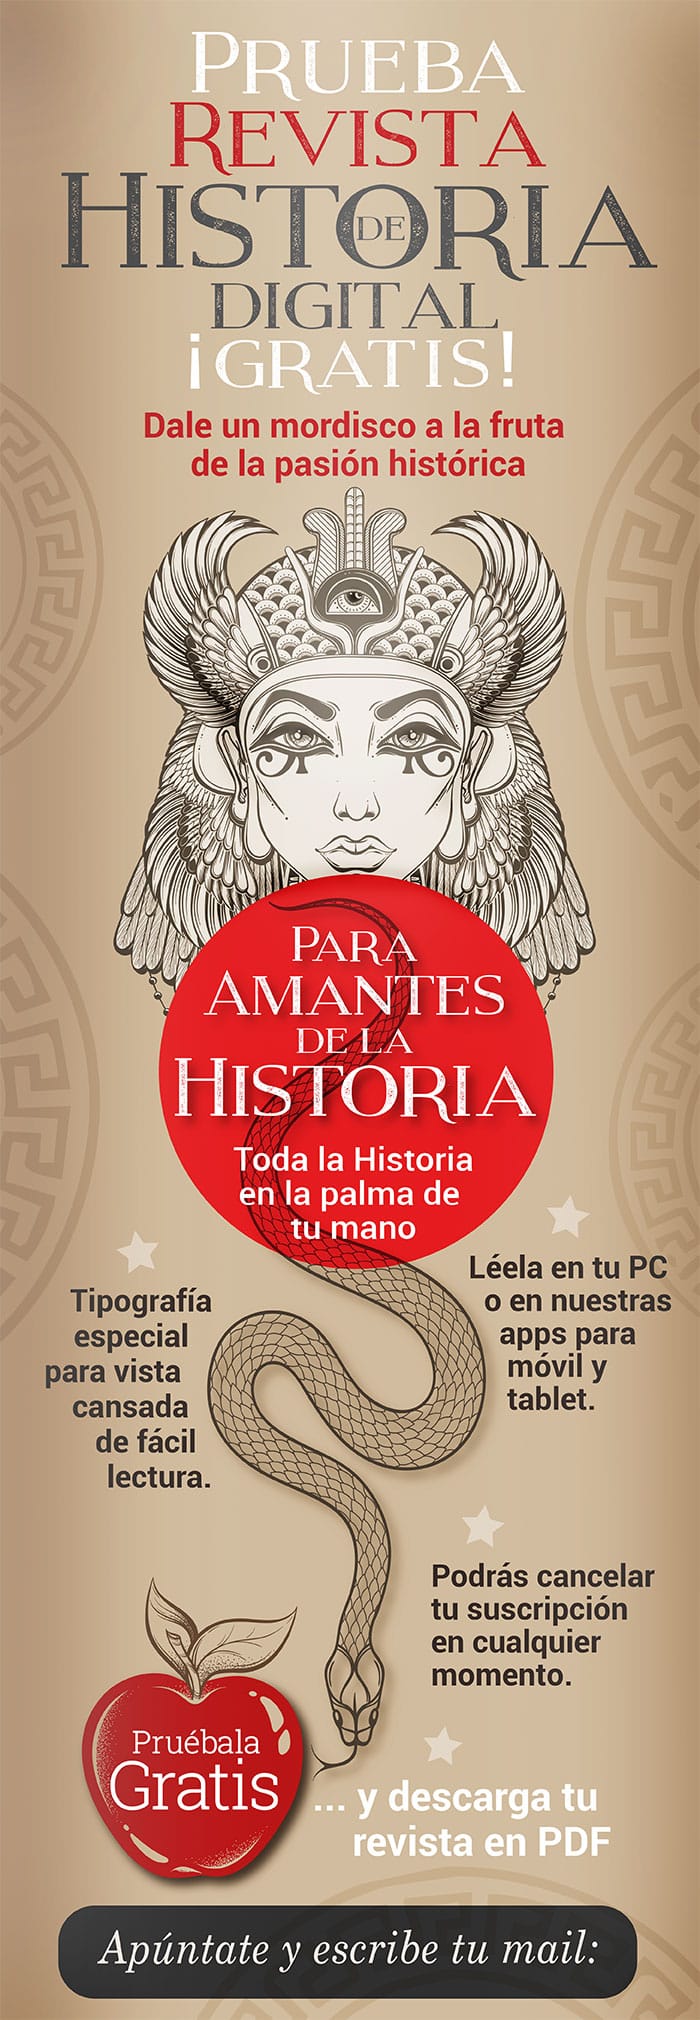 Revista de Historia digital